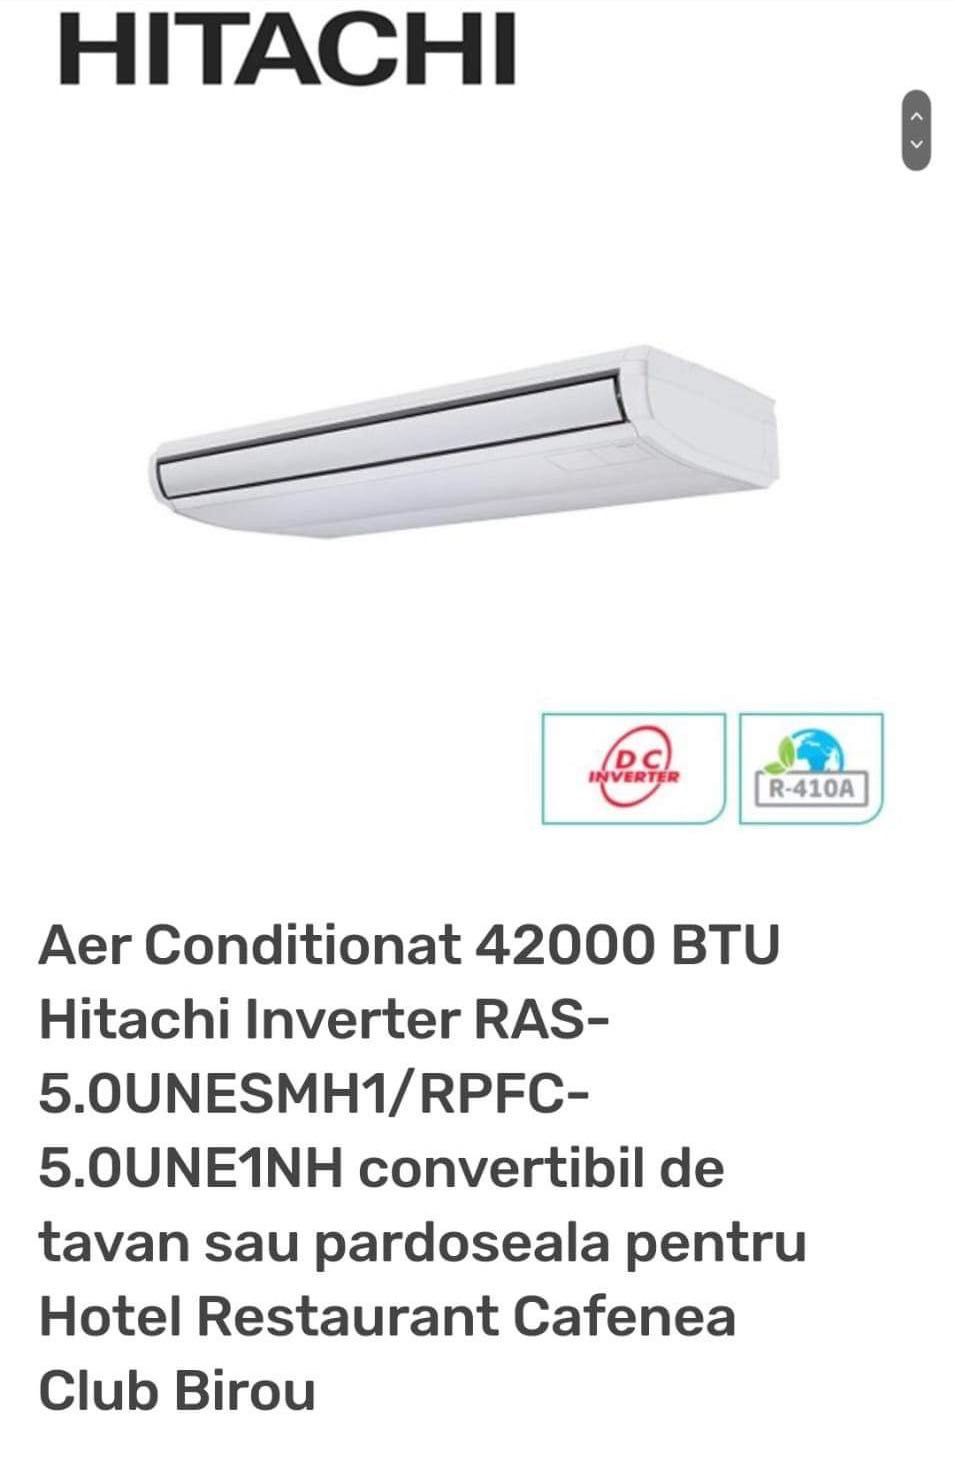 Aer Cobditionat 42000 btu Hitachi Inverter